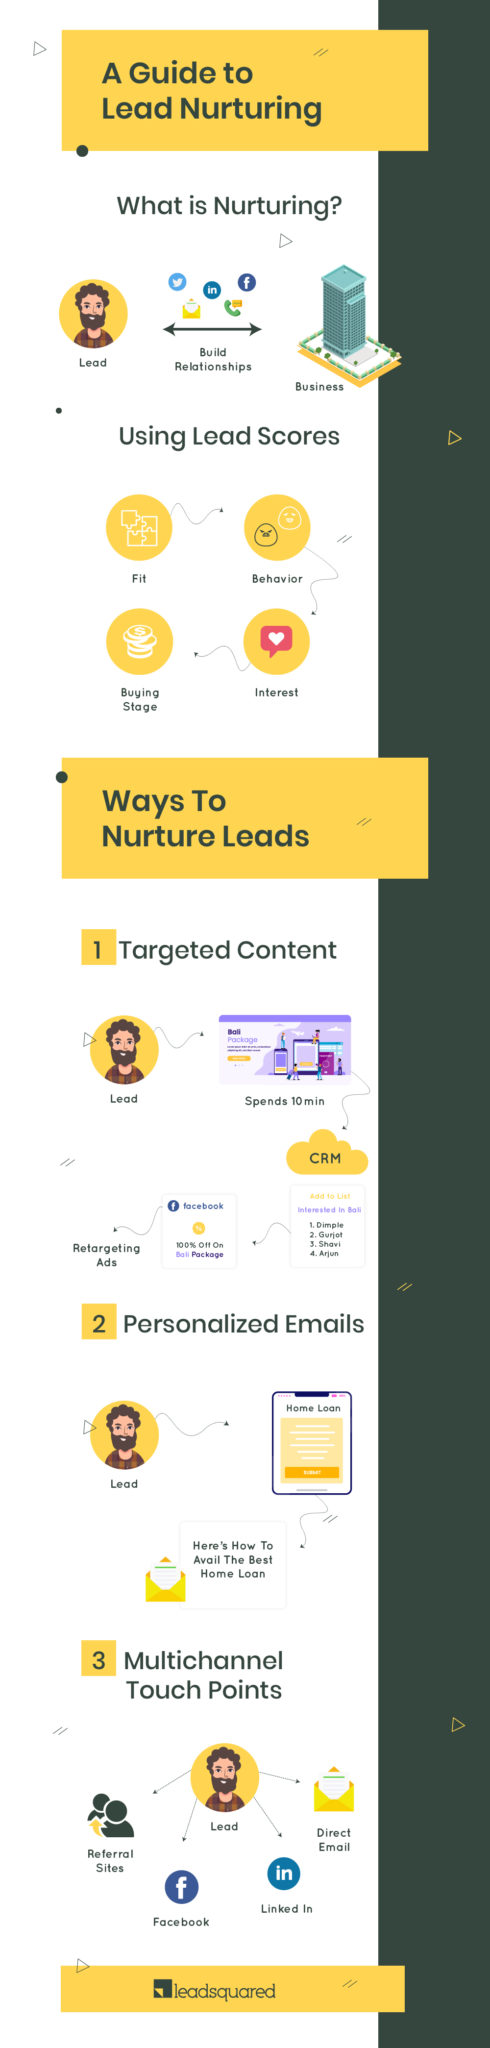 Lead nurturing - infographic